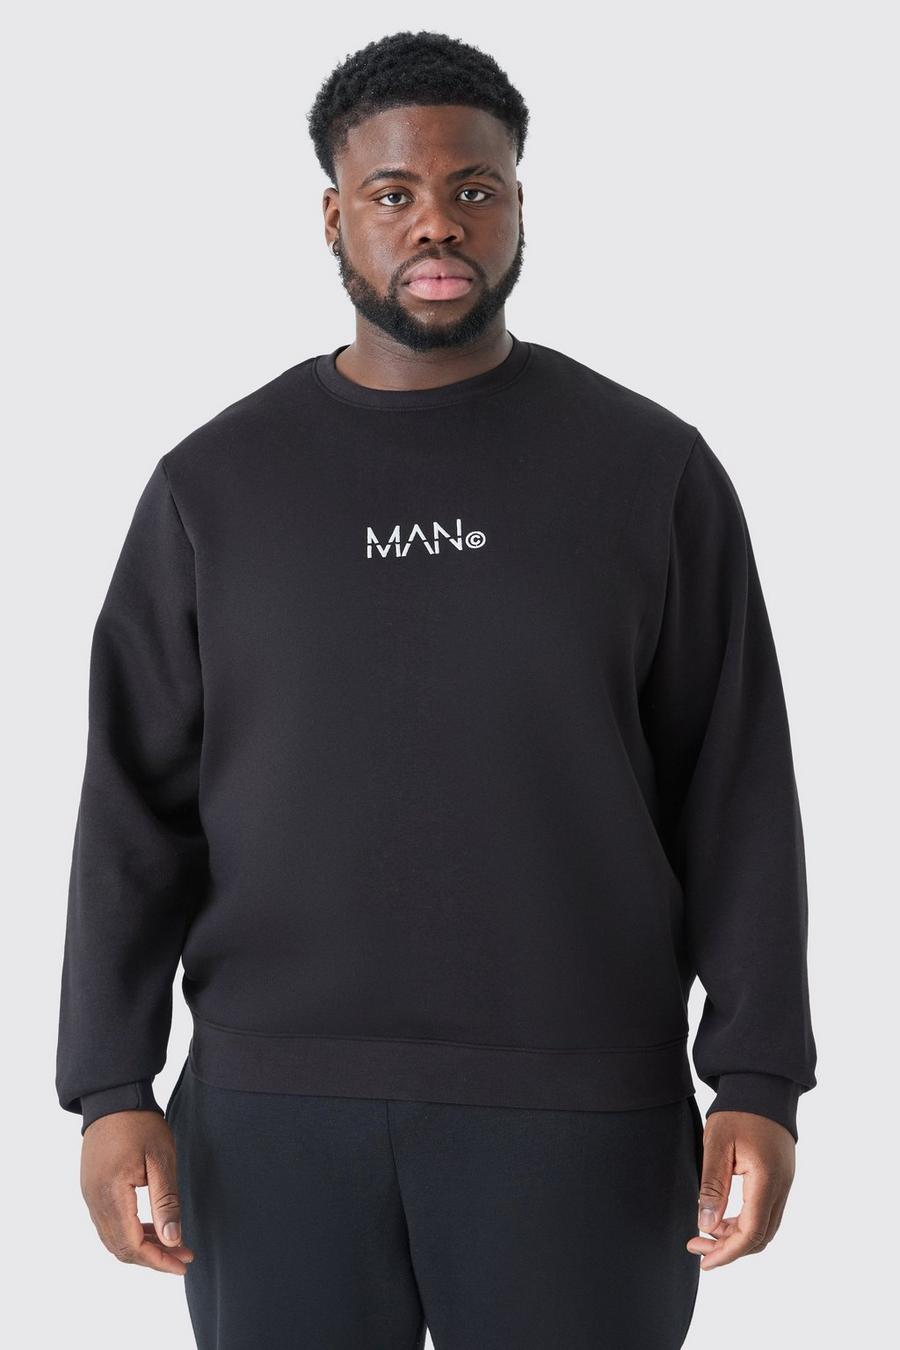 Plus Man-Dash Rundhals Sweatshirt in Schwarz, Black